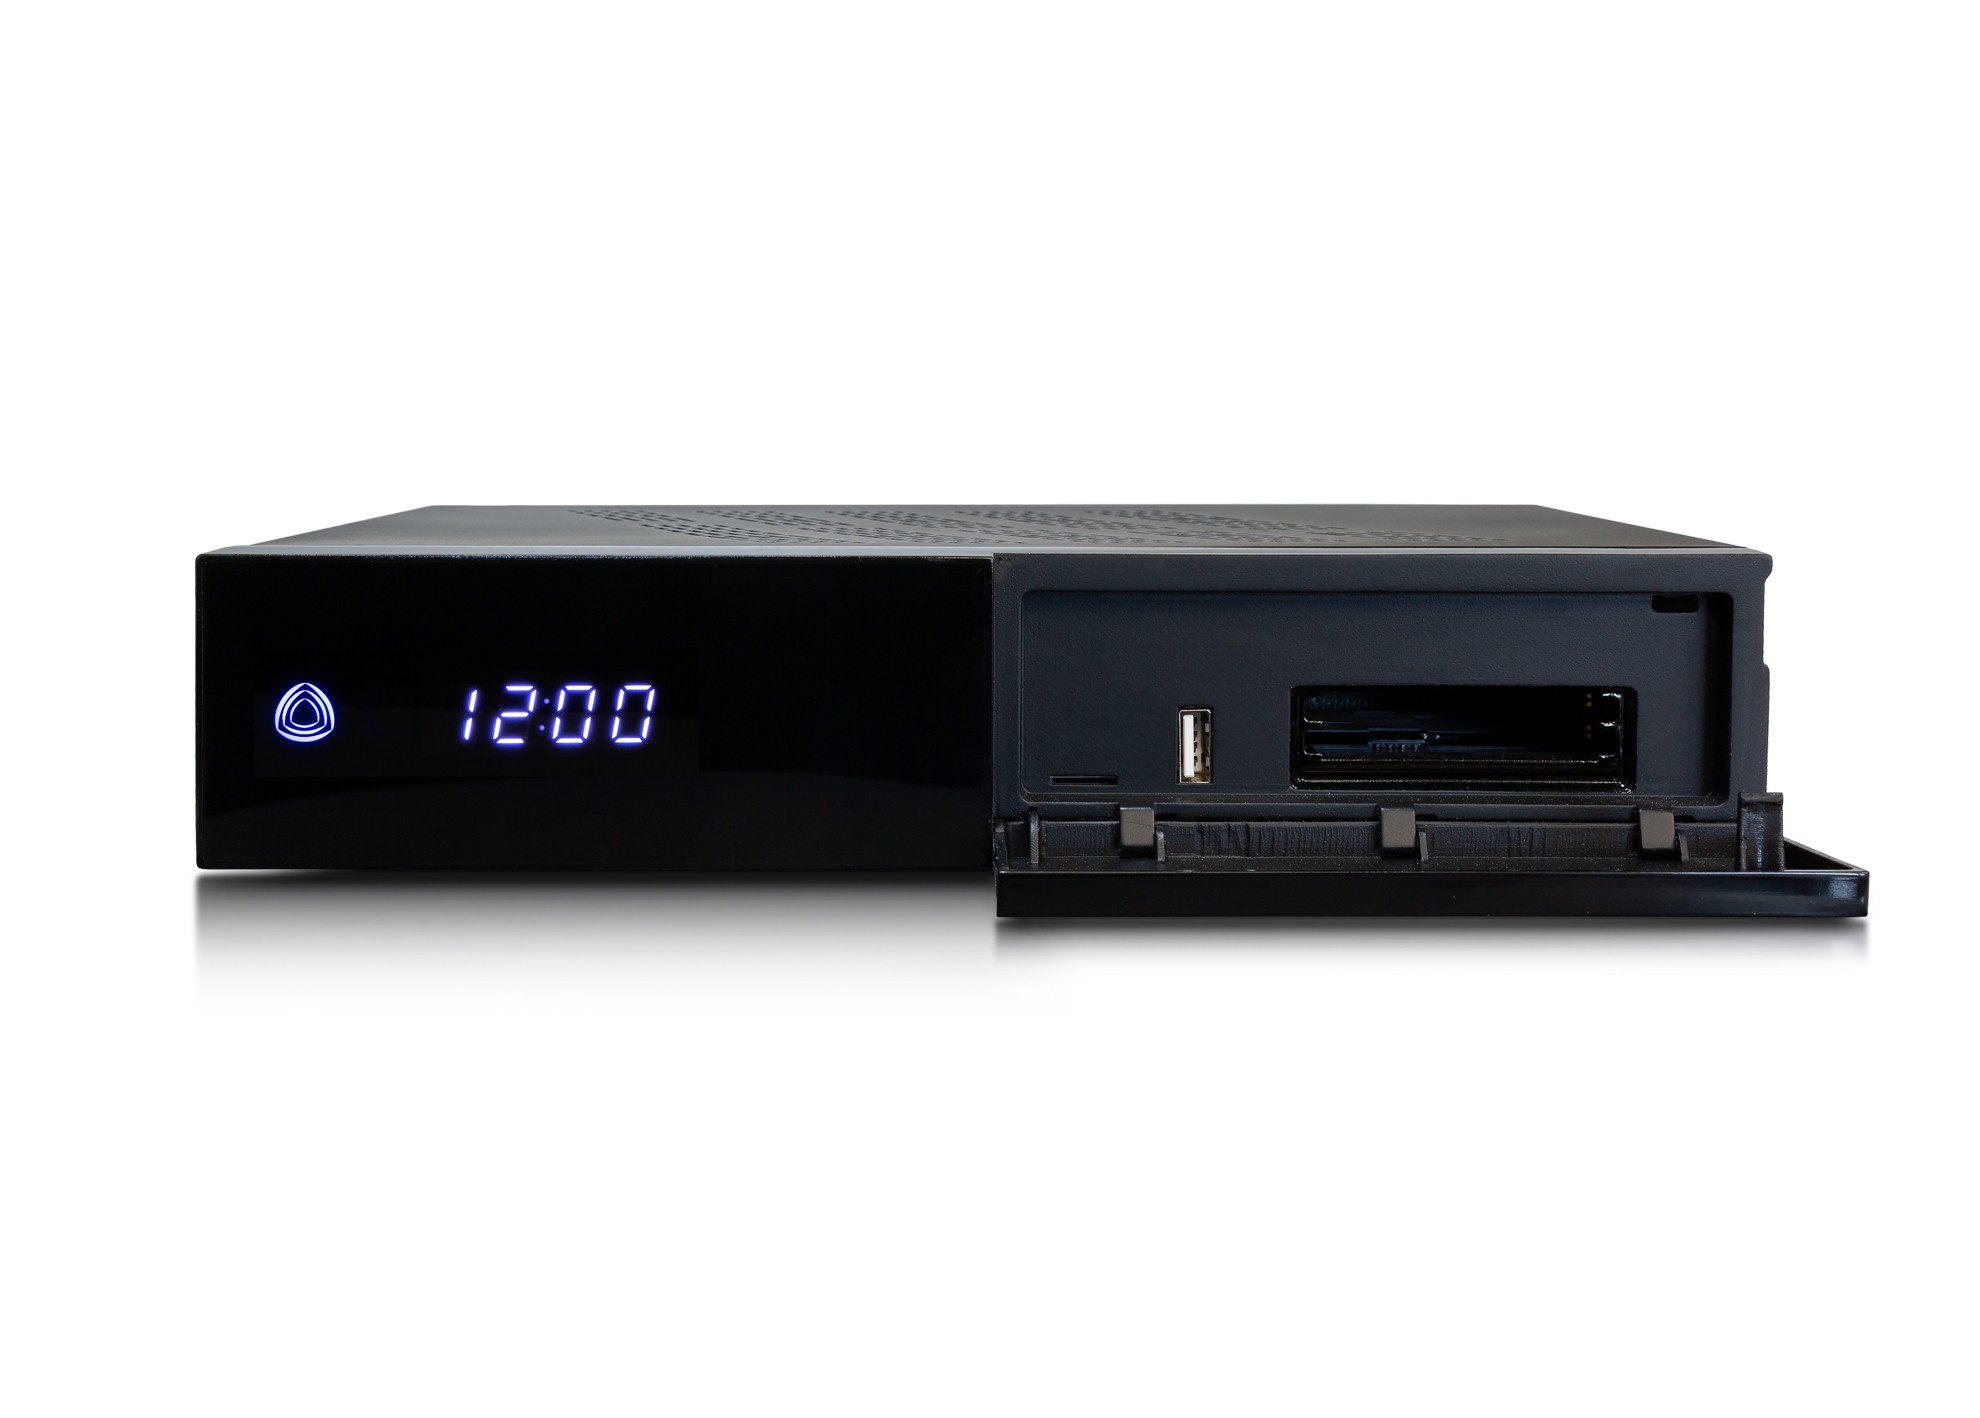 AB PULSe 4K UHD 2xDVB-S2X Sat Receiver (Linux E2, PVR, H.265, HDR10, CI, LAN, schwarz)